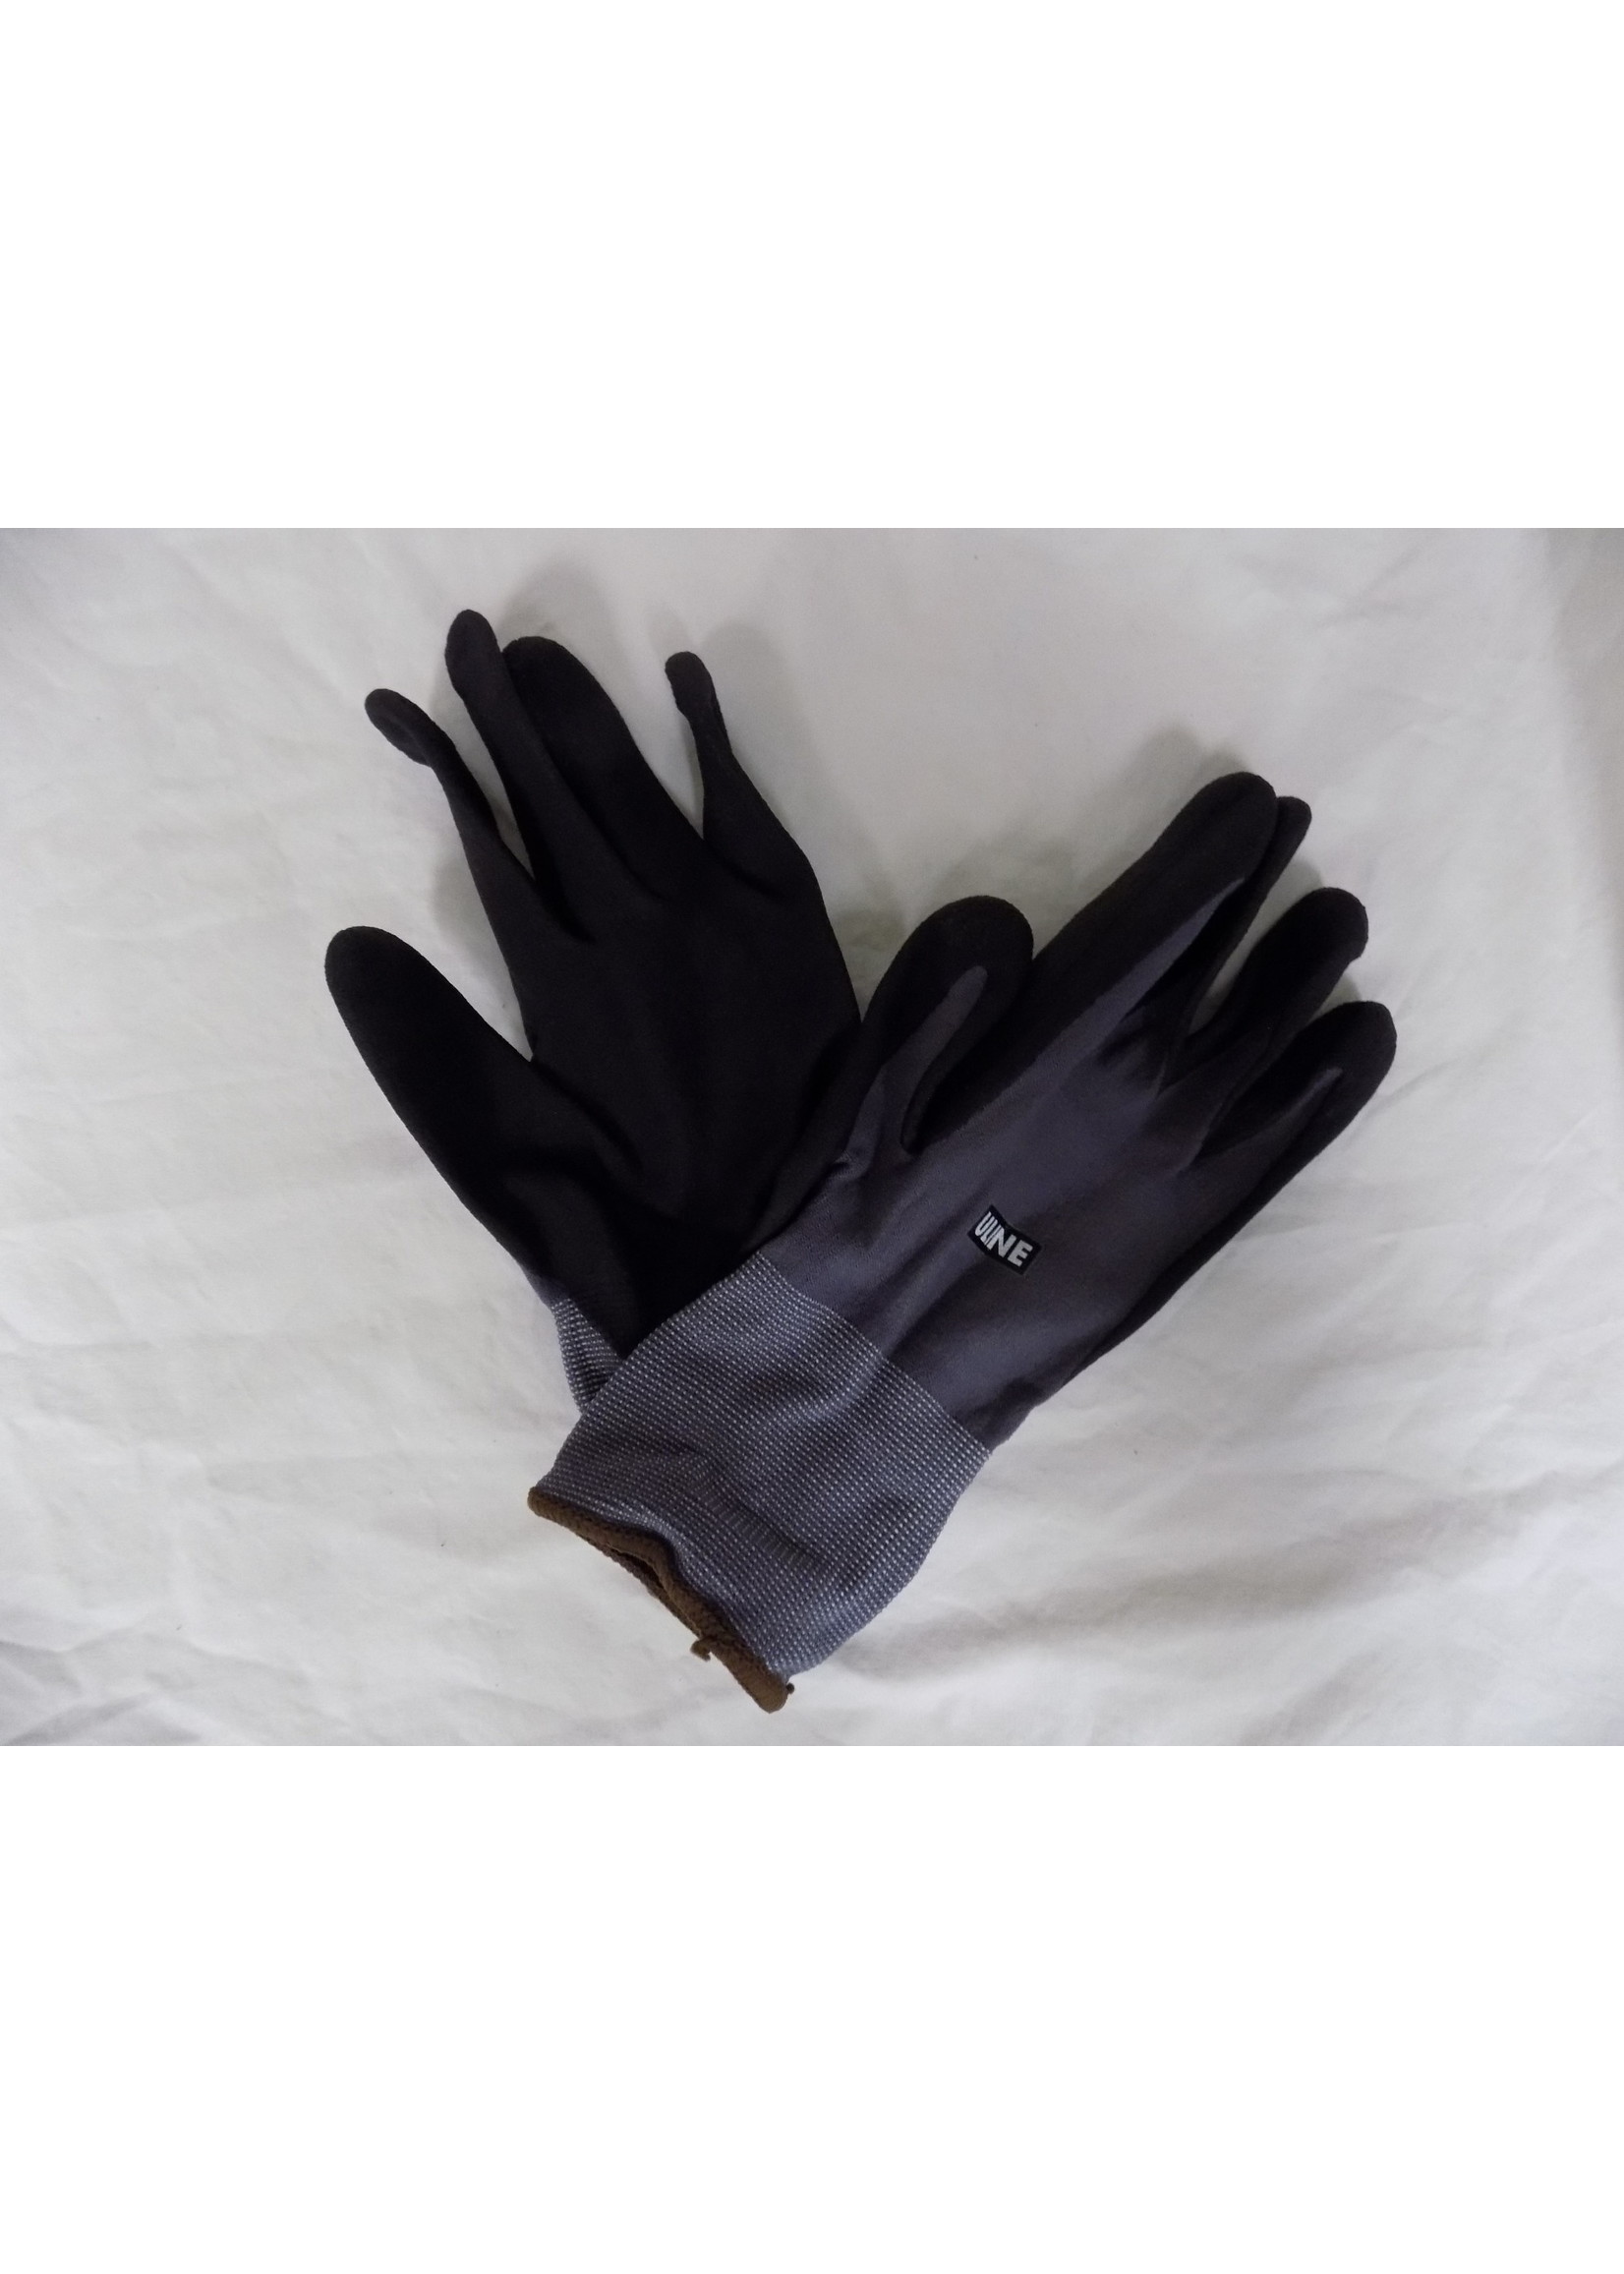 Coolflex Uline Coolflex Nitrile Gloves XL